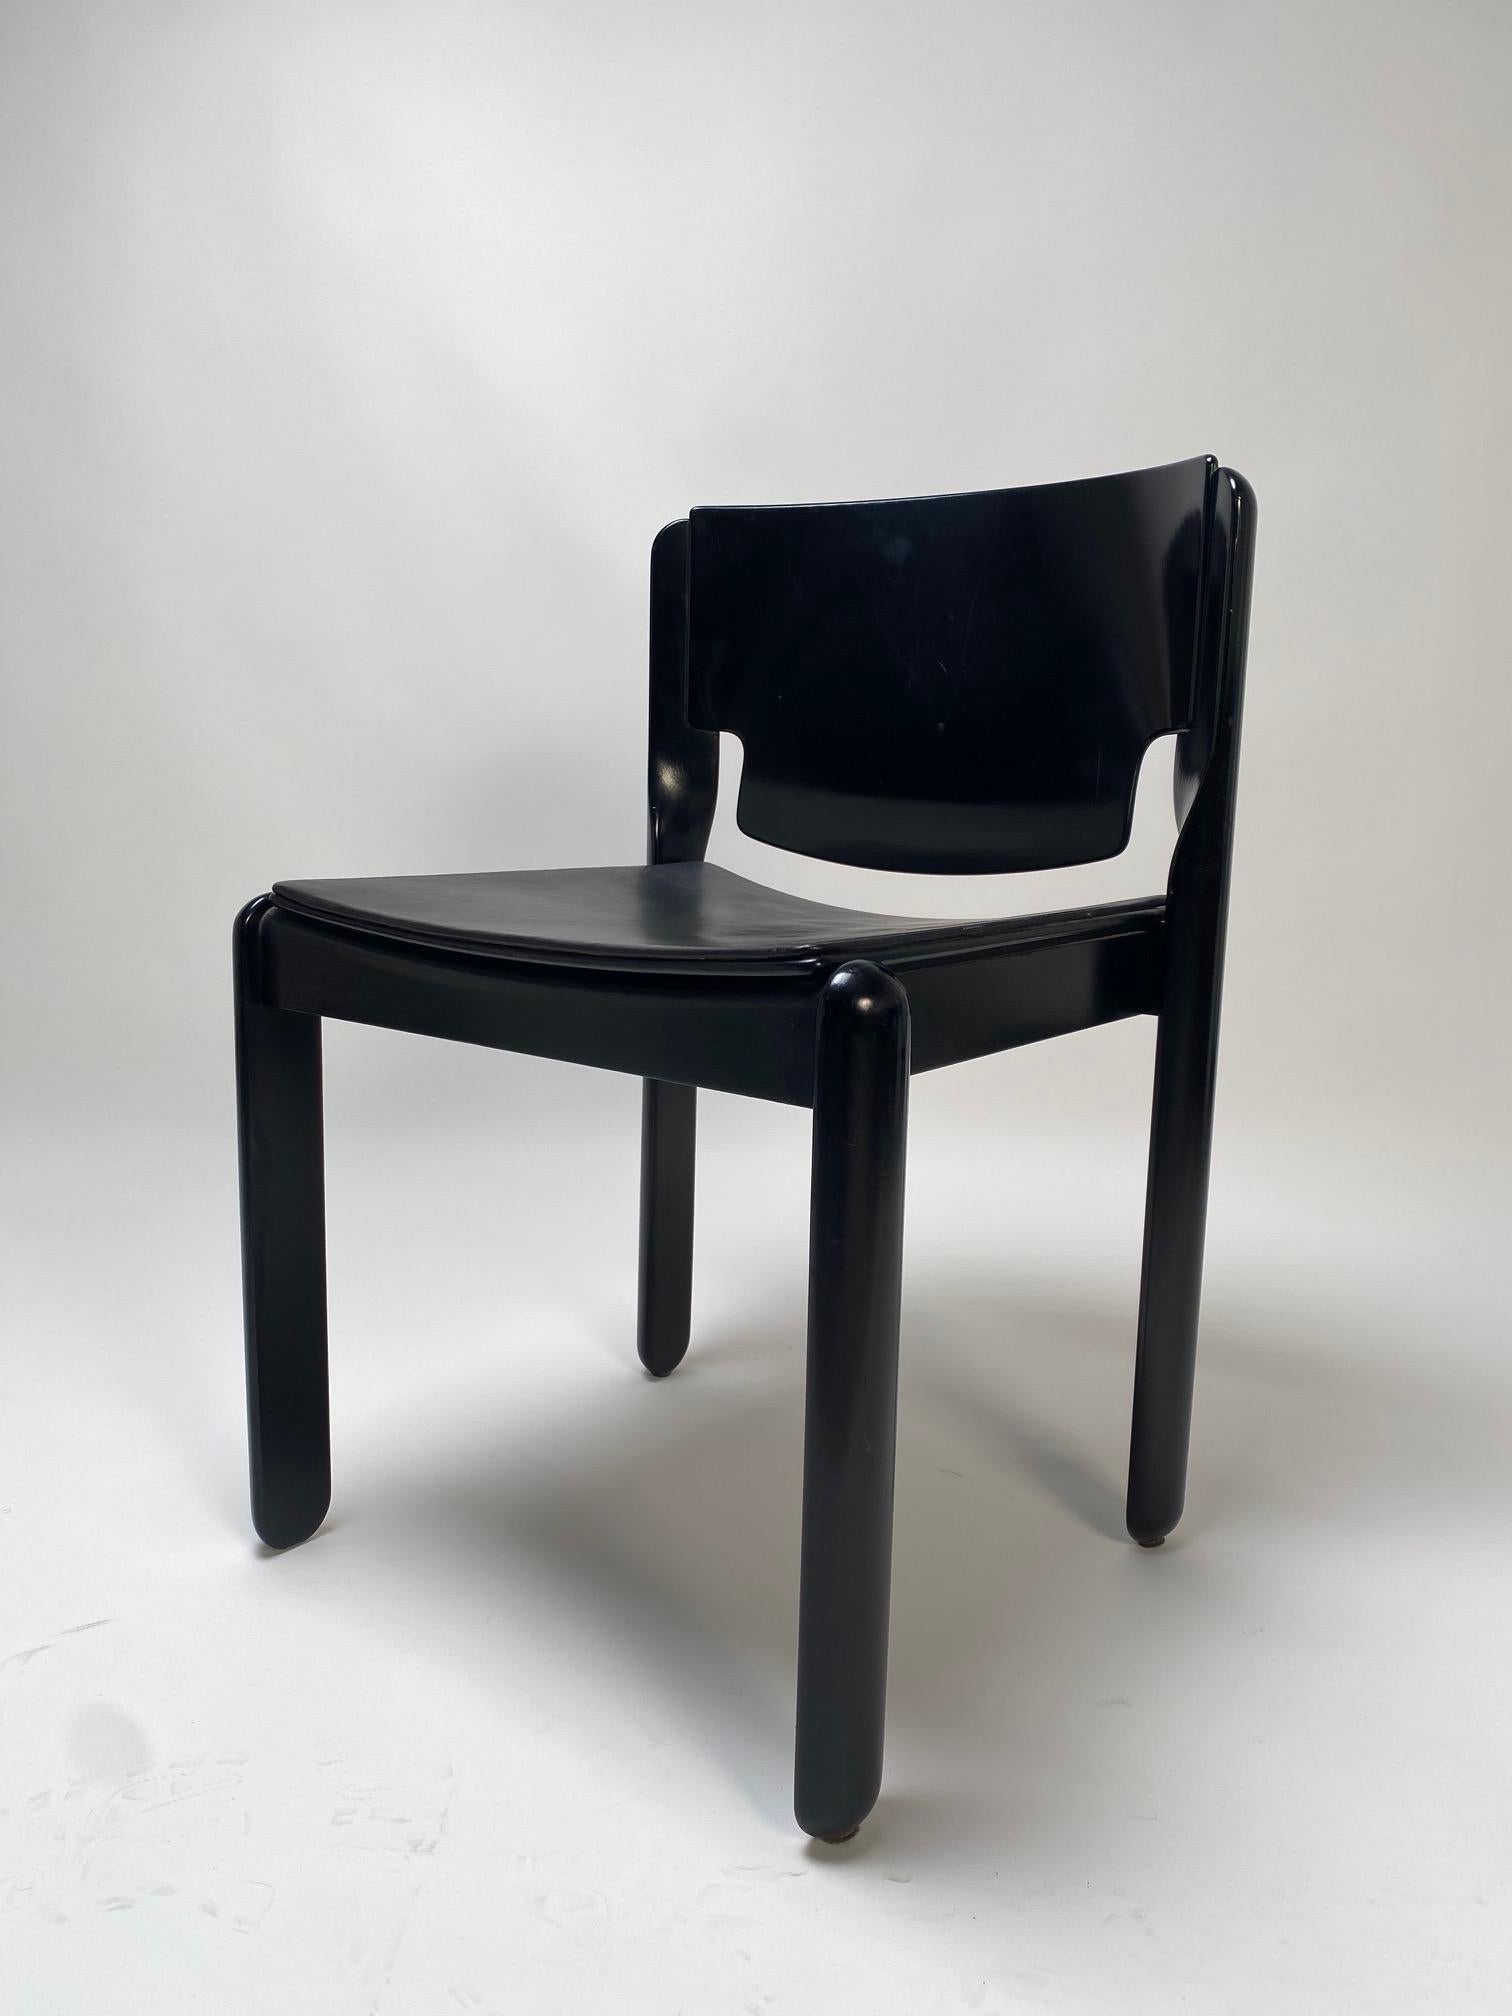 Véritable icône du Making Works/One et du meilleur design appliqué, les 122 chaises sont l'œuvre du célèbre architecte et designer Vico Magistretti.

Confortables et très élégants, dans la version total black que nous proposons ici, ils s'adaptent